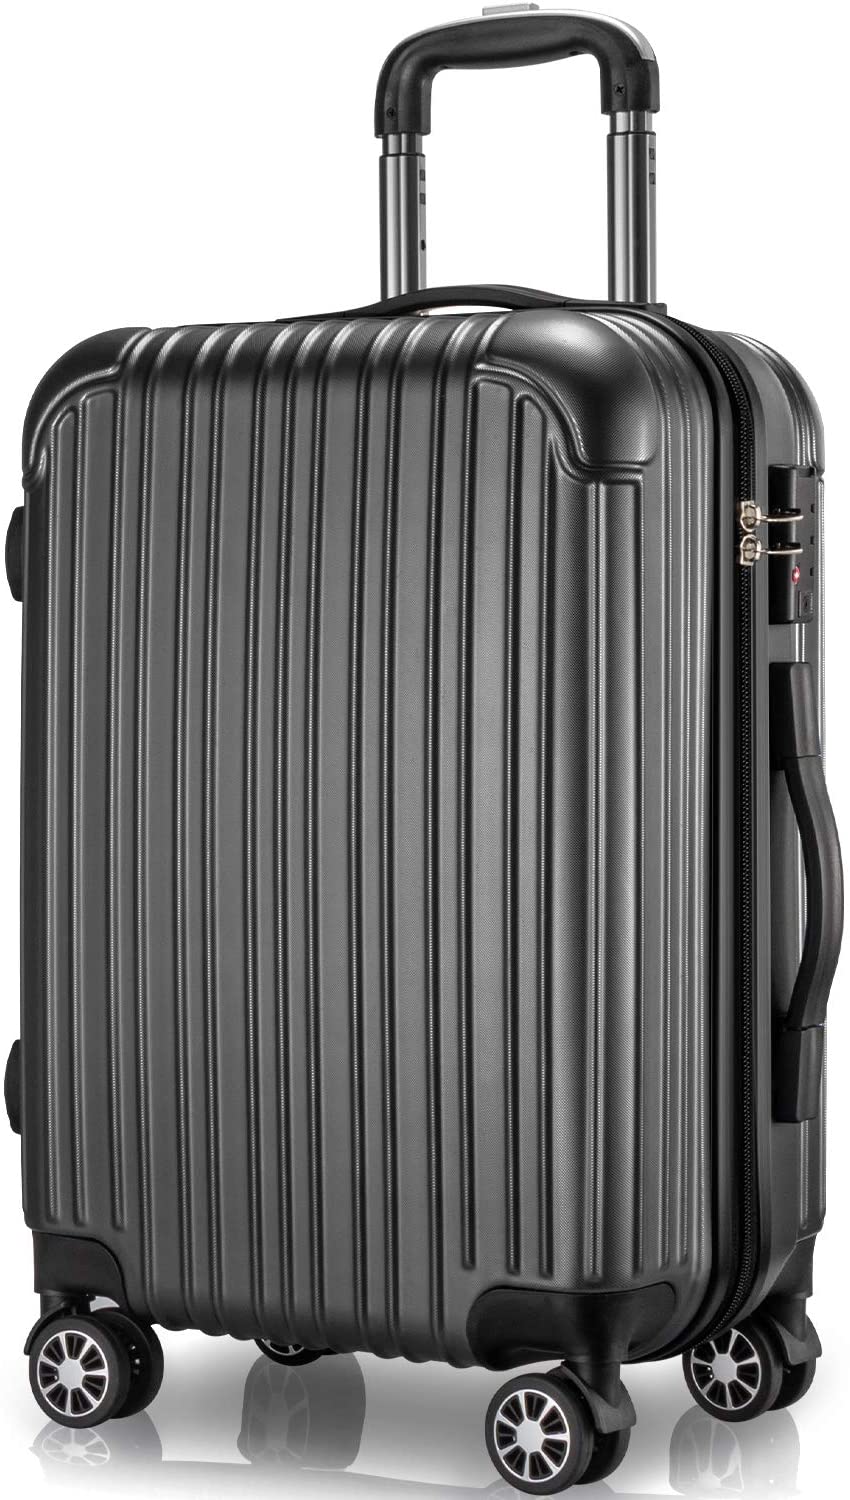 スーツケース キャリーケース 97L Lサイズ キャリーバッグ ファスナー式 旅行 ビジネス 出張 カバン バッグ 大型 大量収納 軽量 おしゃれ 静音